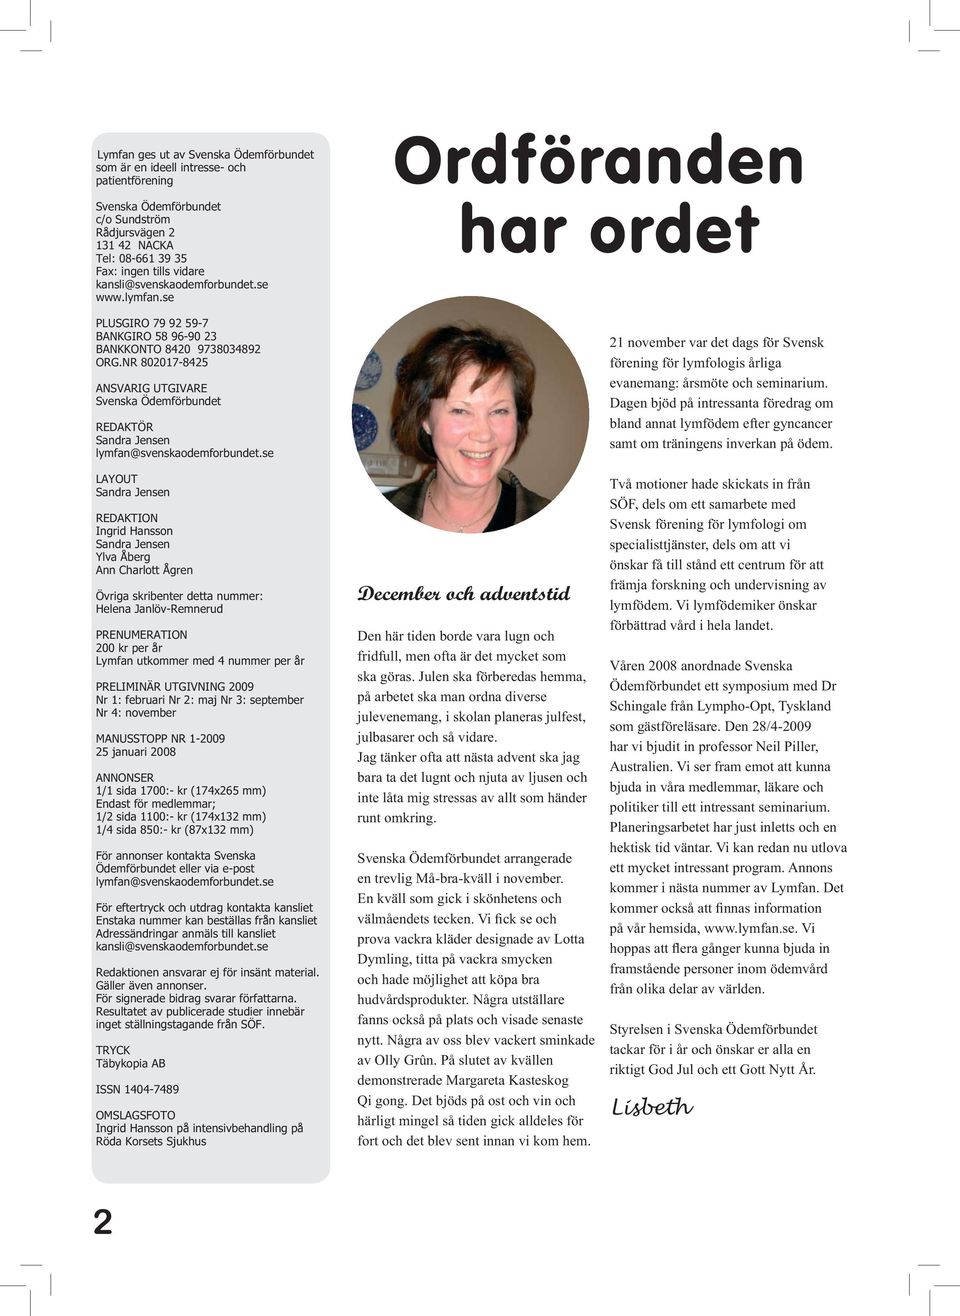 NR 802017-8425 ANSVARIG UTGIVARE Svenska Ödemförbundet REDAKTÖR Sandra Jensen lymfan@svenskaodemforbundet.